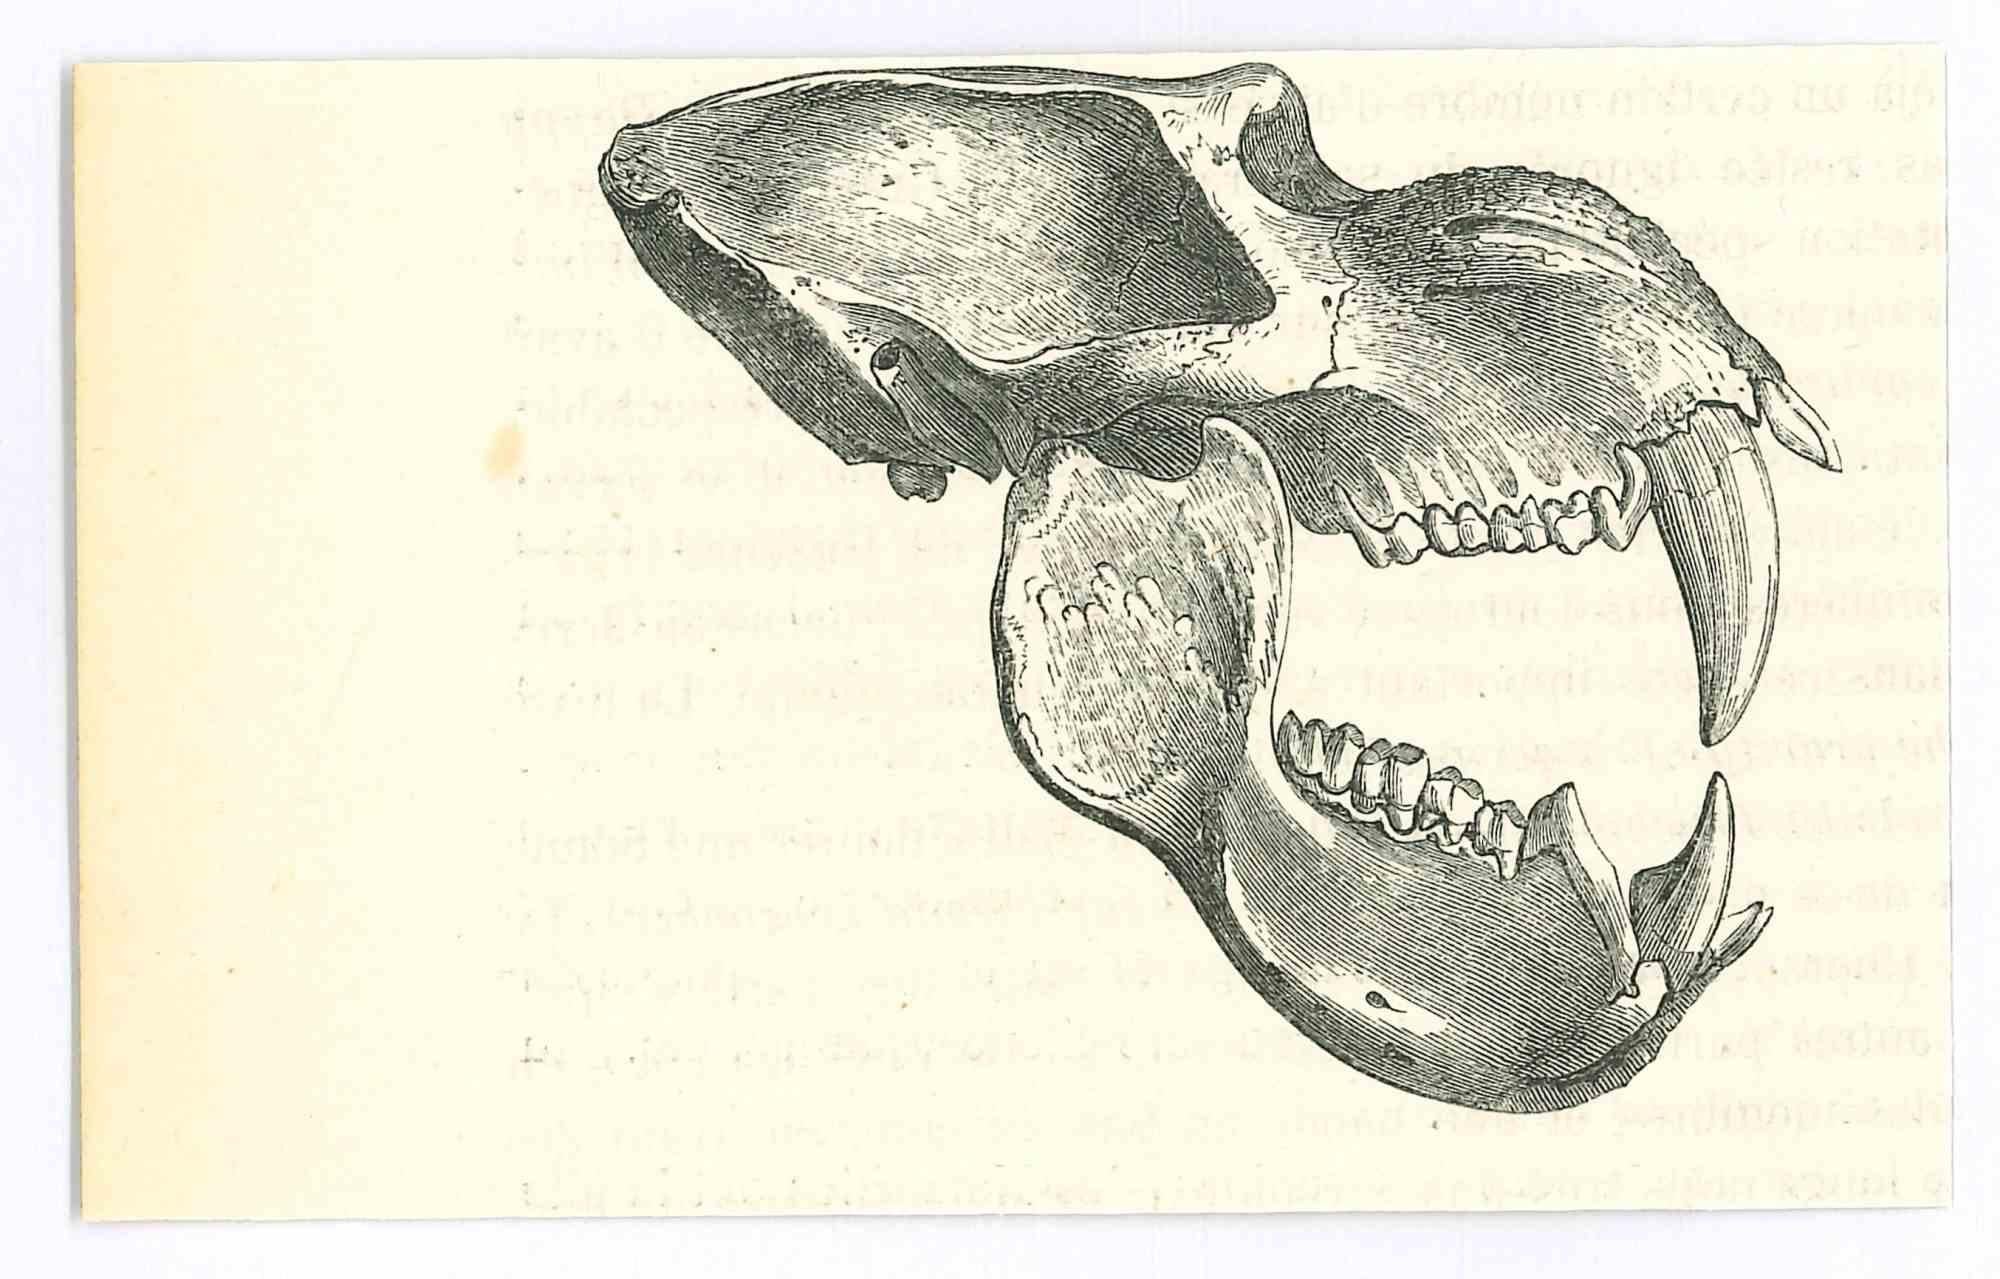 Le crâne - Lithographie originale de Paul Gervais - 1854